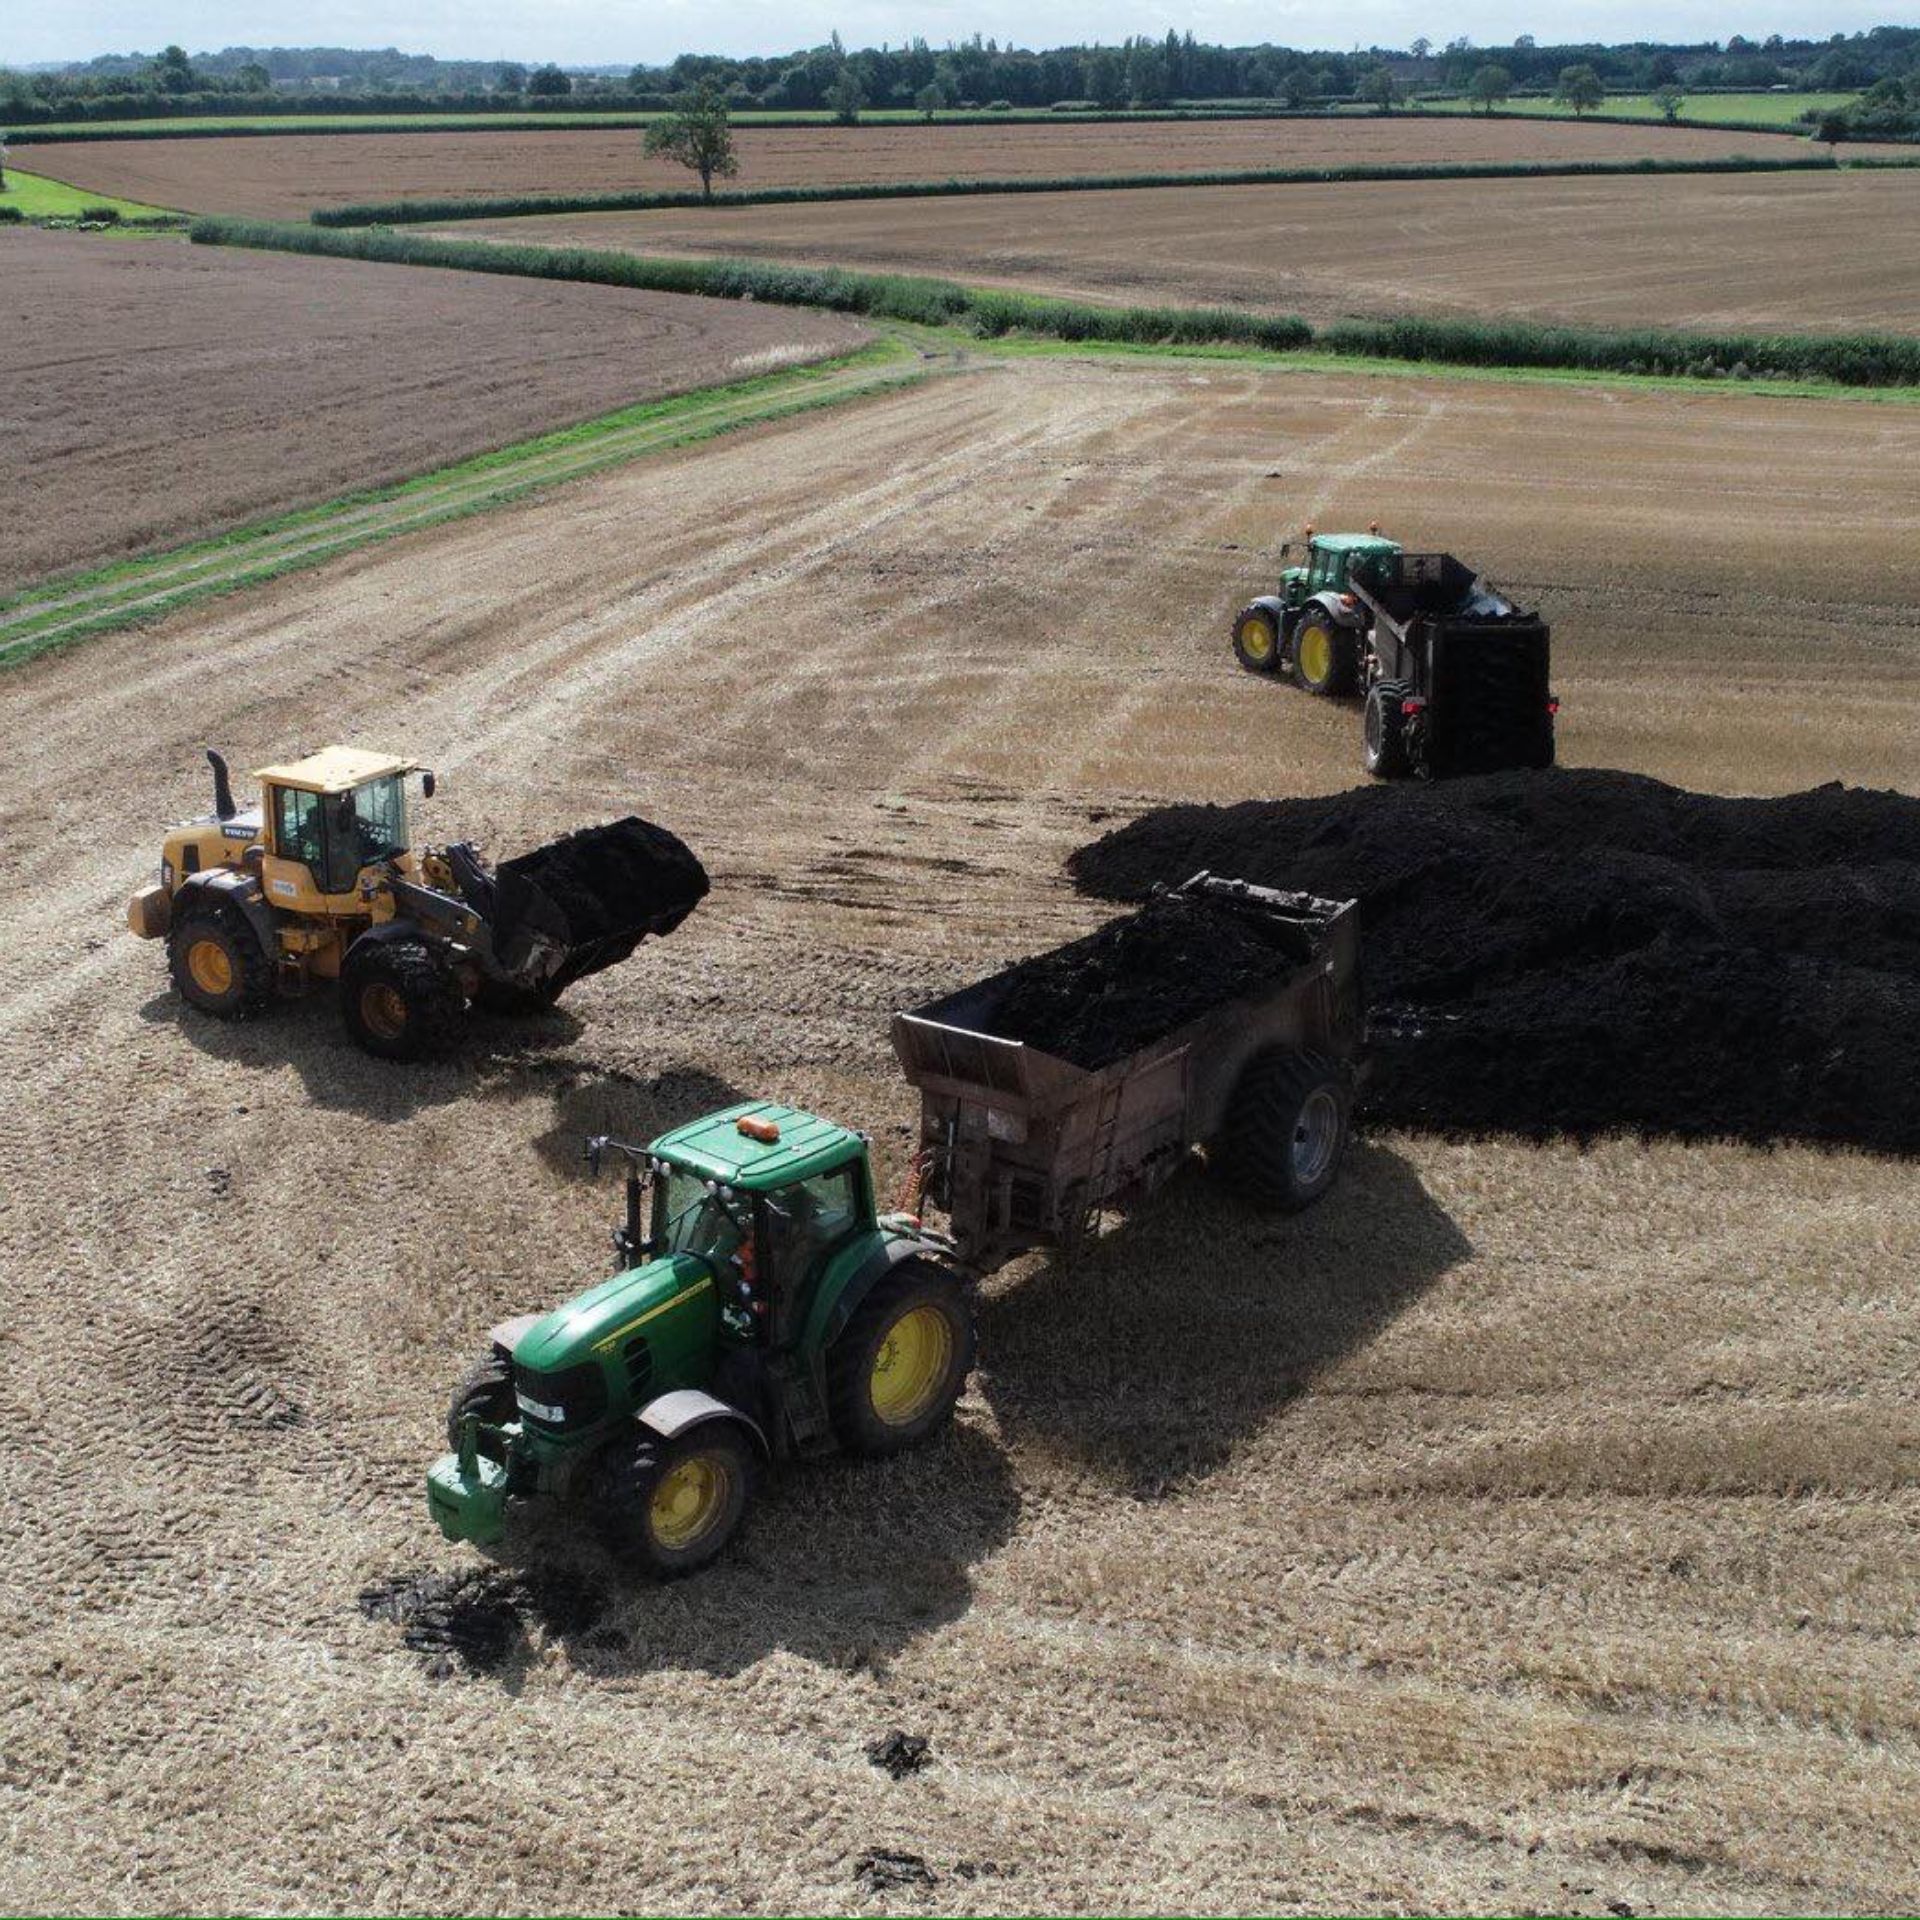 Three tractors in a field